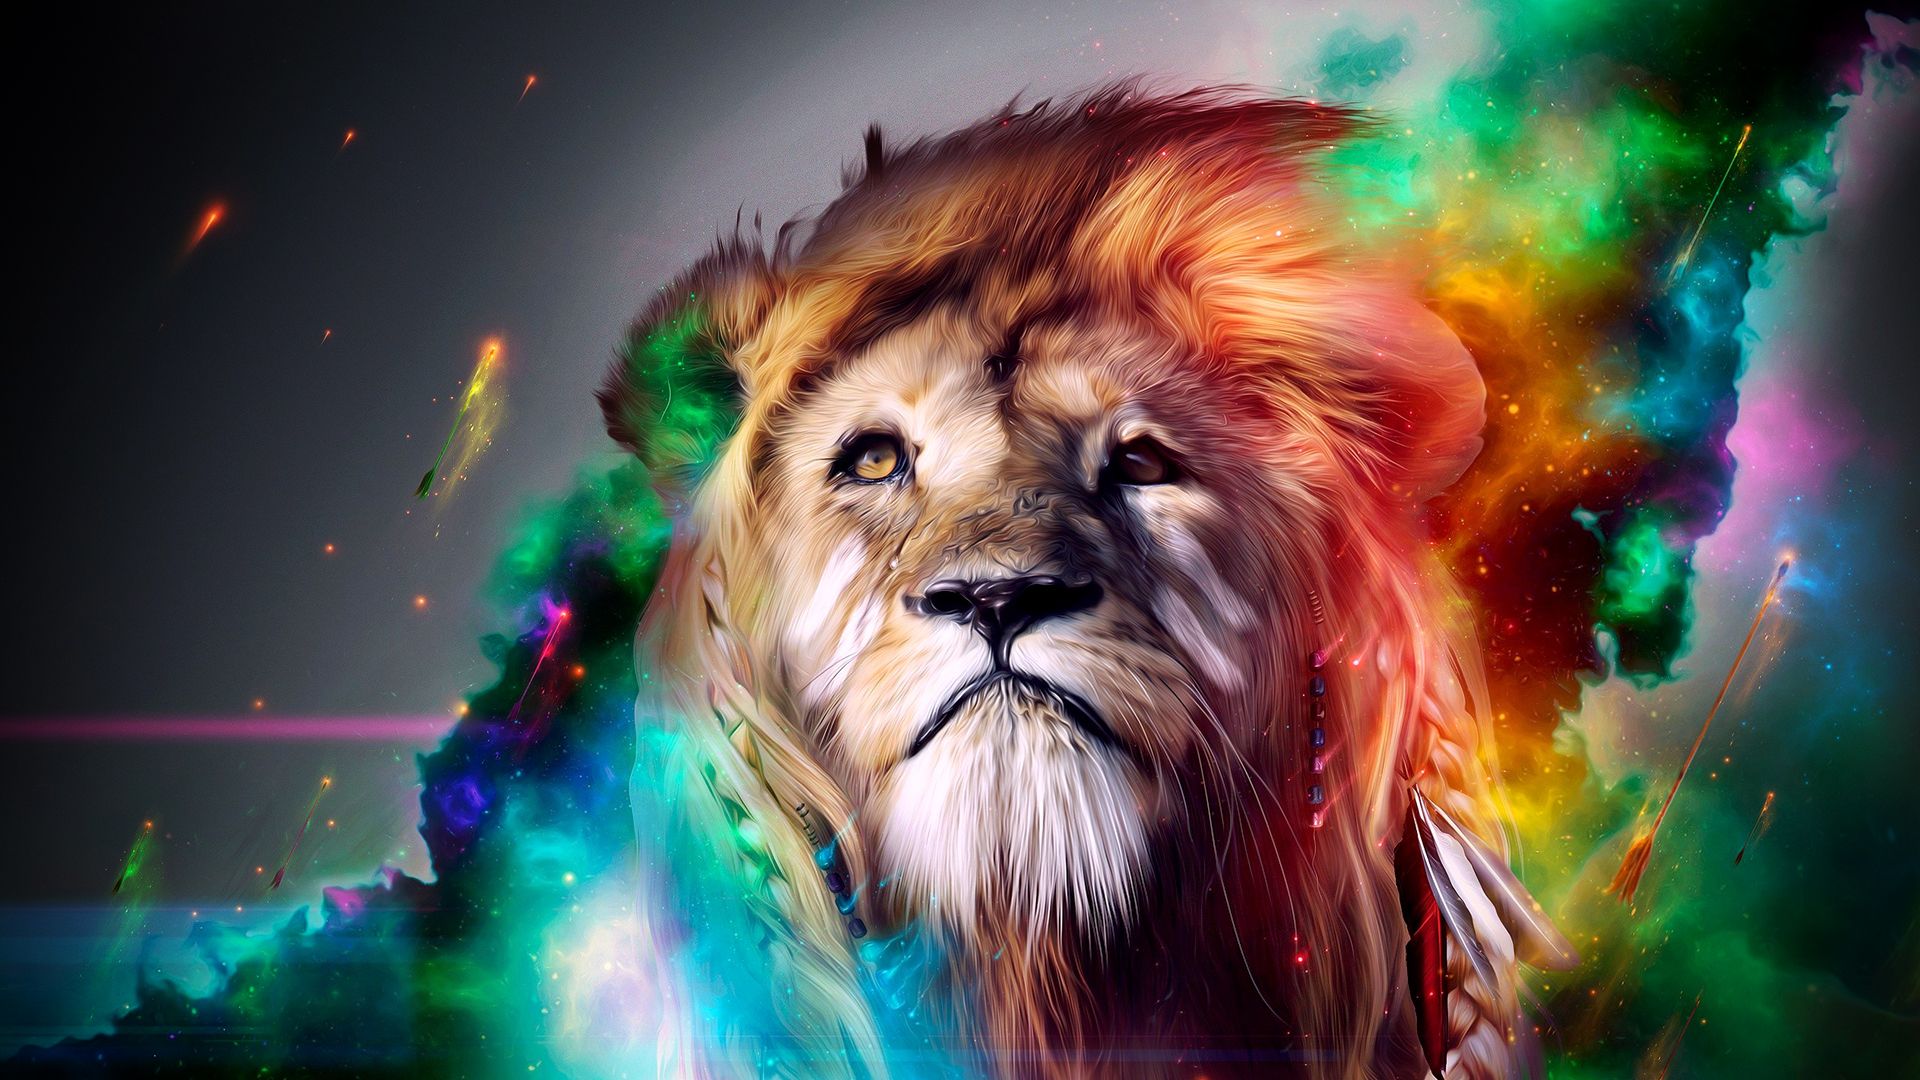 Colorful Lion Wallpaperwallpaperafari.com